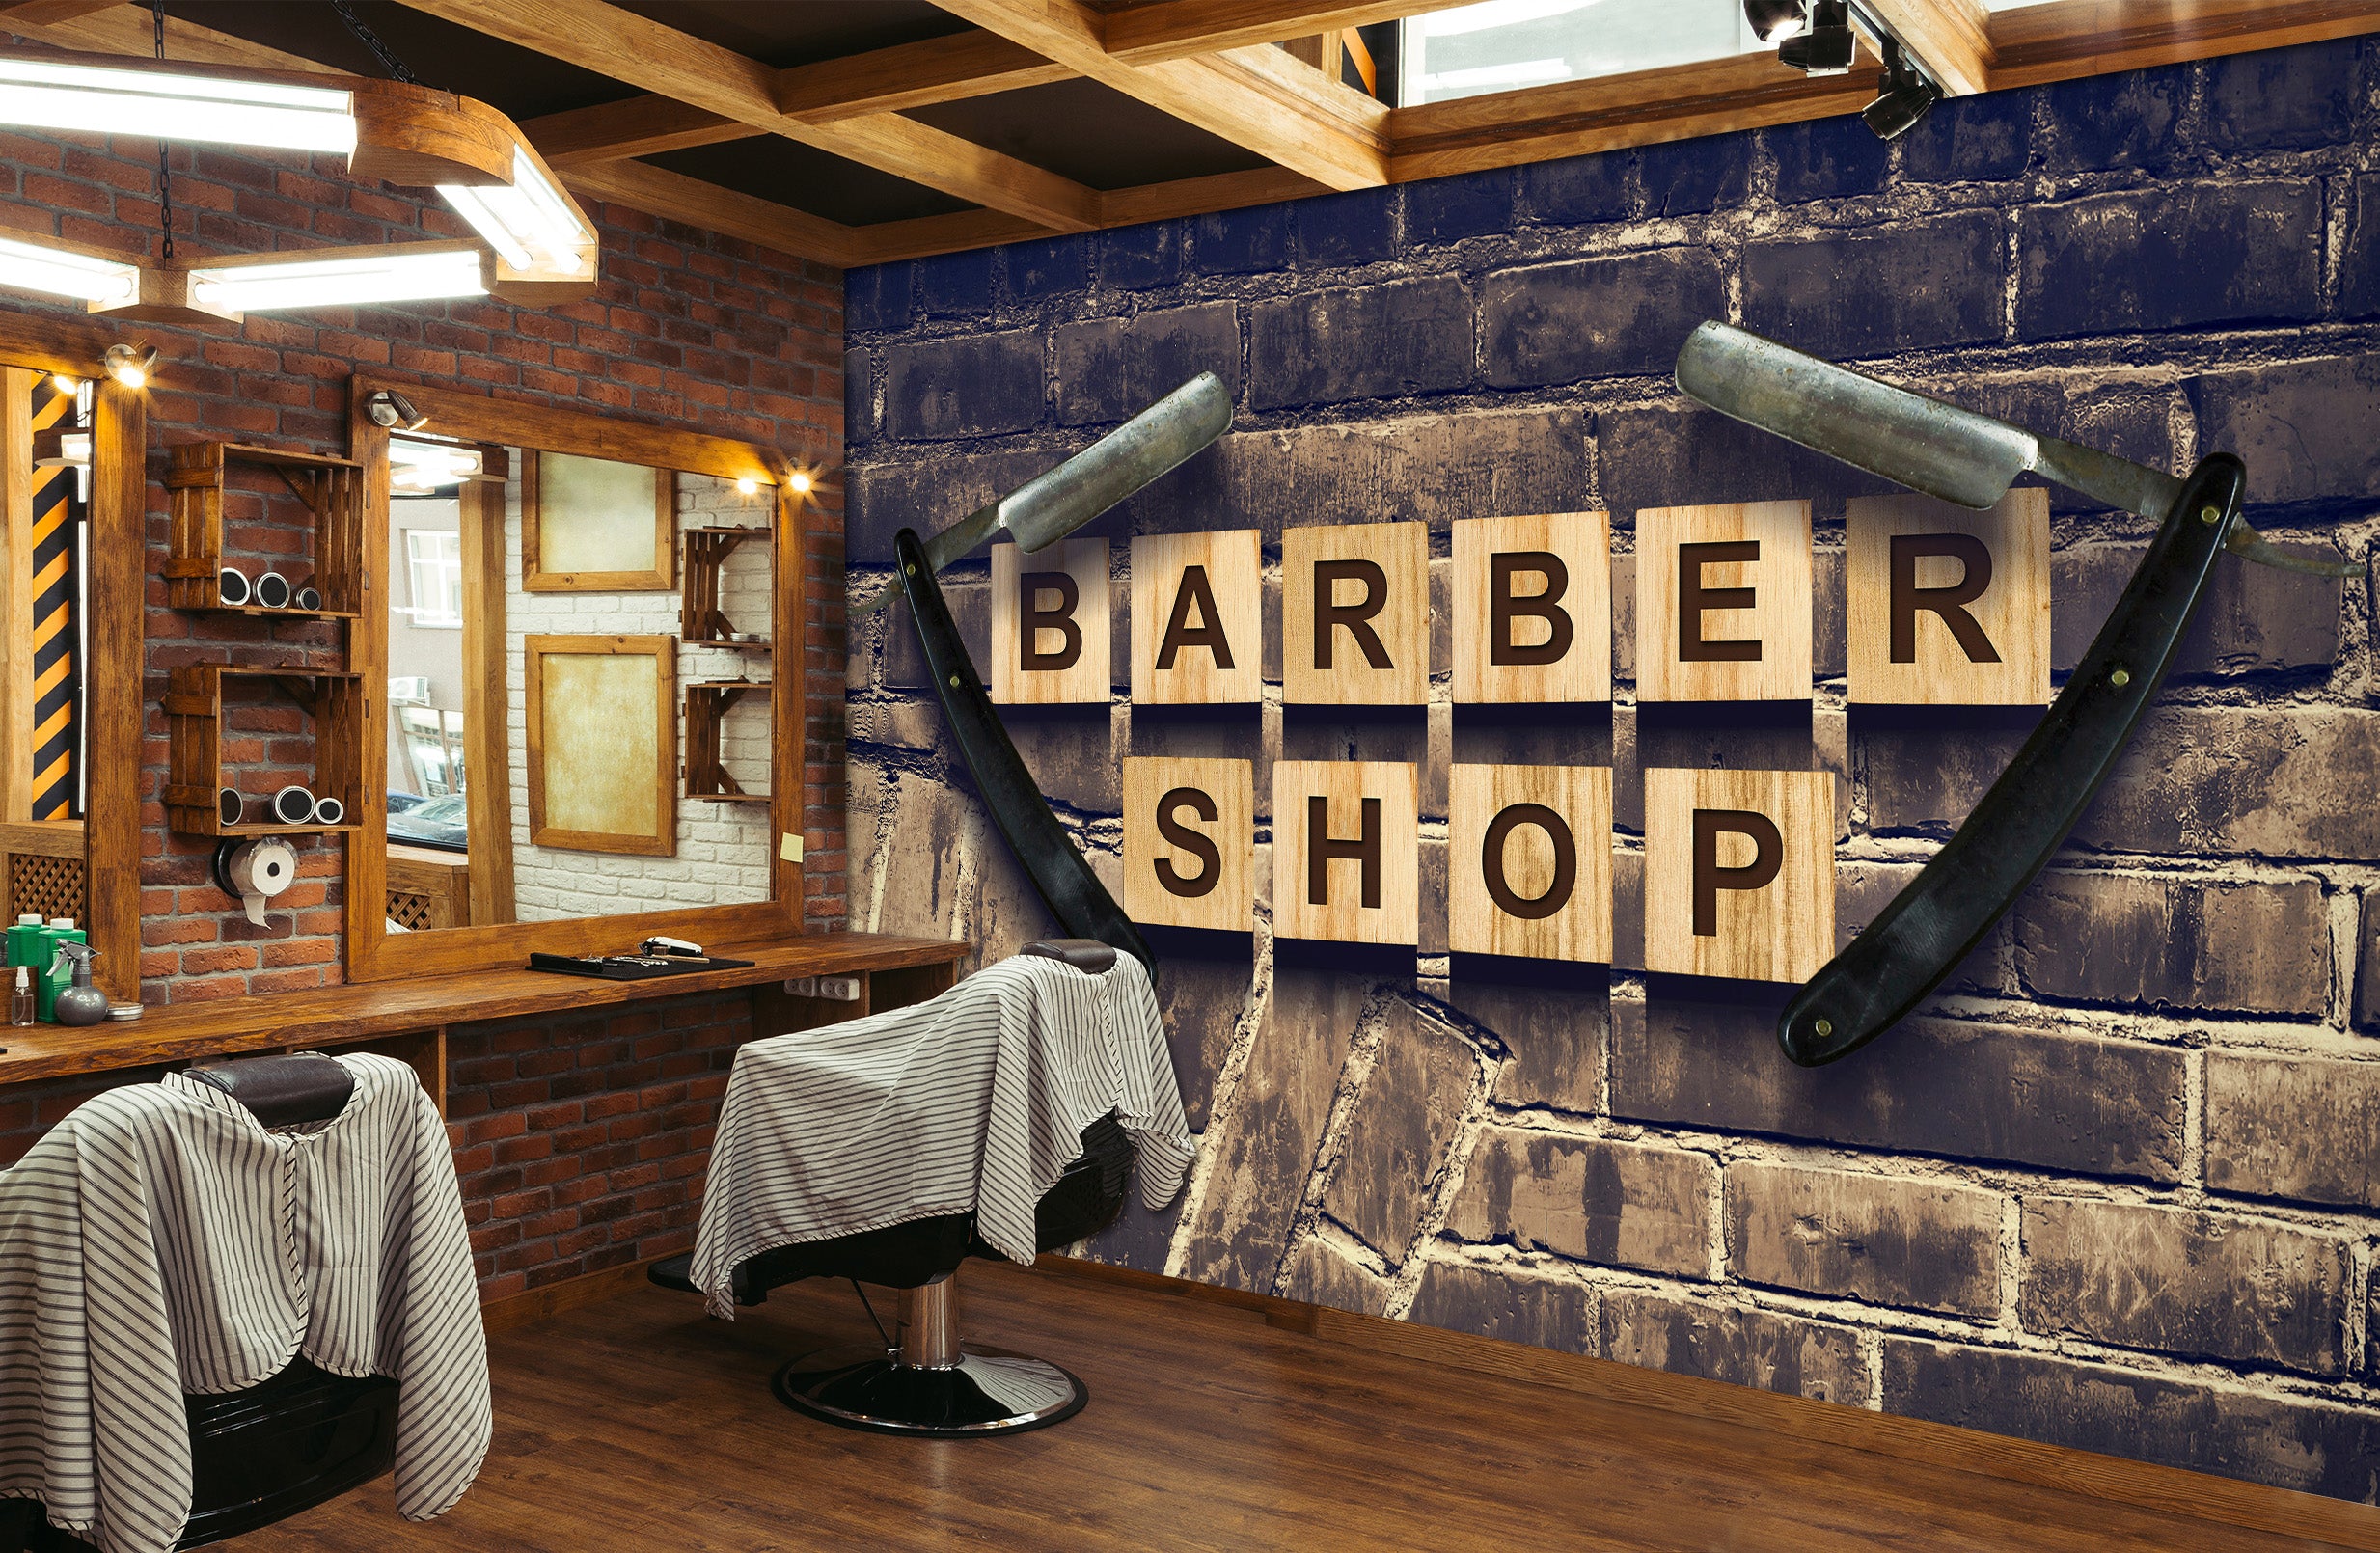 3D Letter Block Scraper 115165 Barber Shop Wall Murals